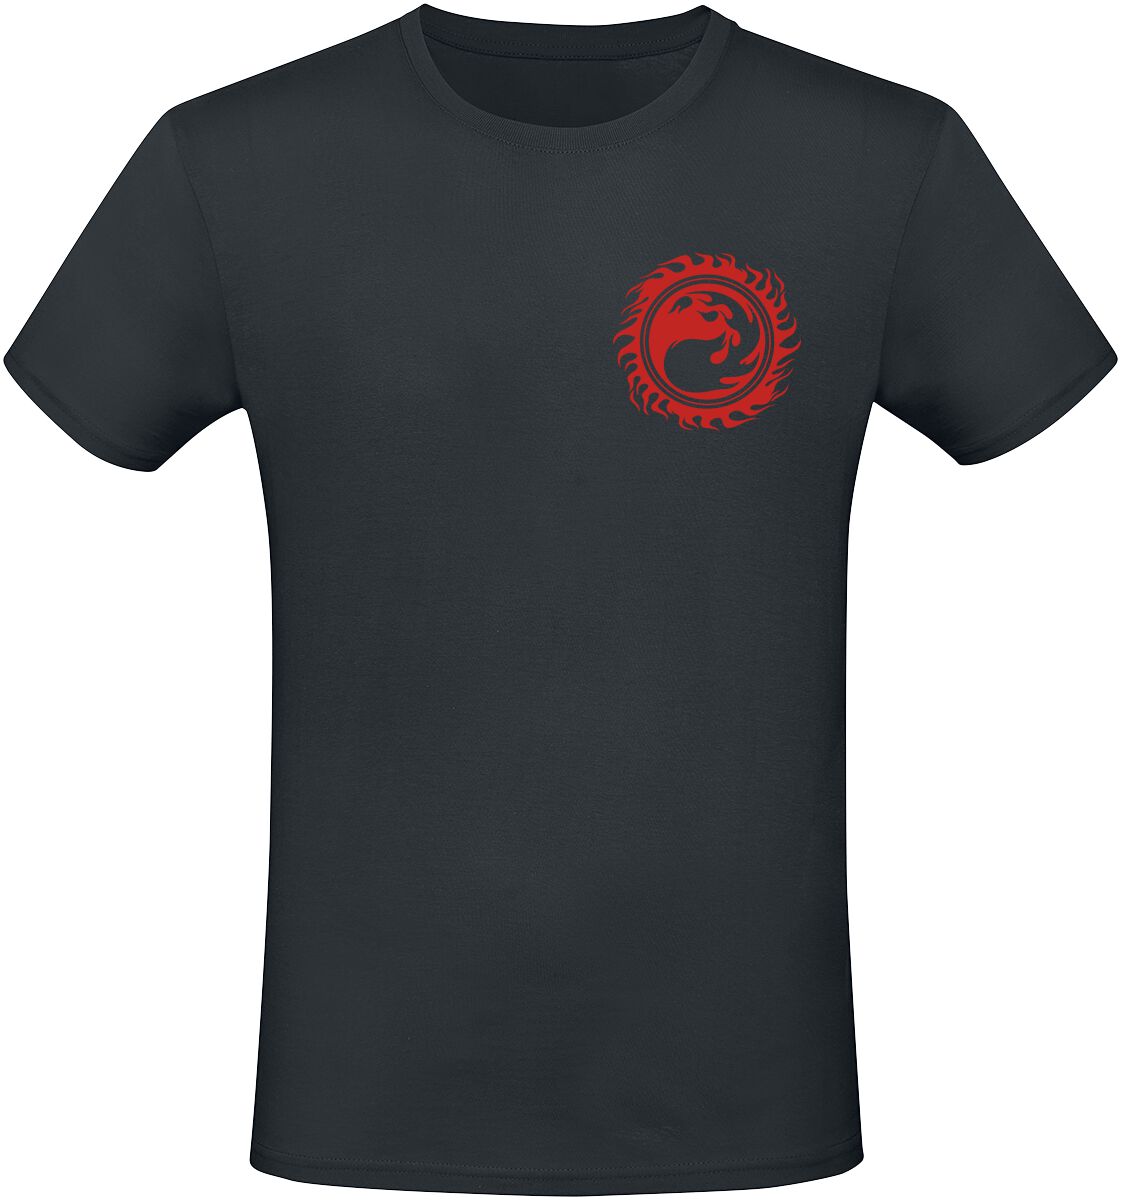 Magic: The Gathering - Gaming T-Shirt - Red Mana - S bis XXL - für Männer - Größe S - schwarz  - EMP exklusives Merchandise!